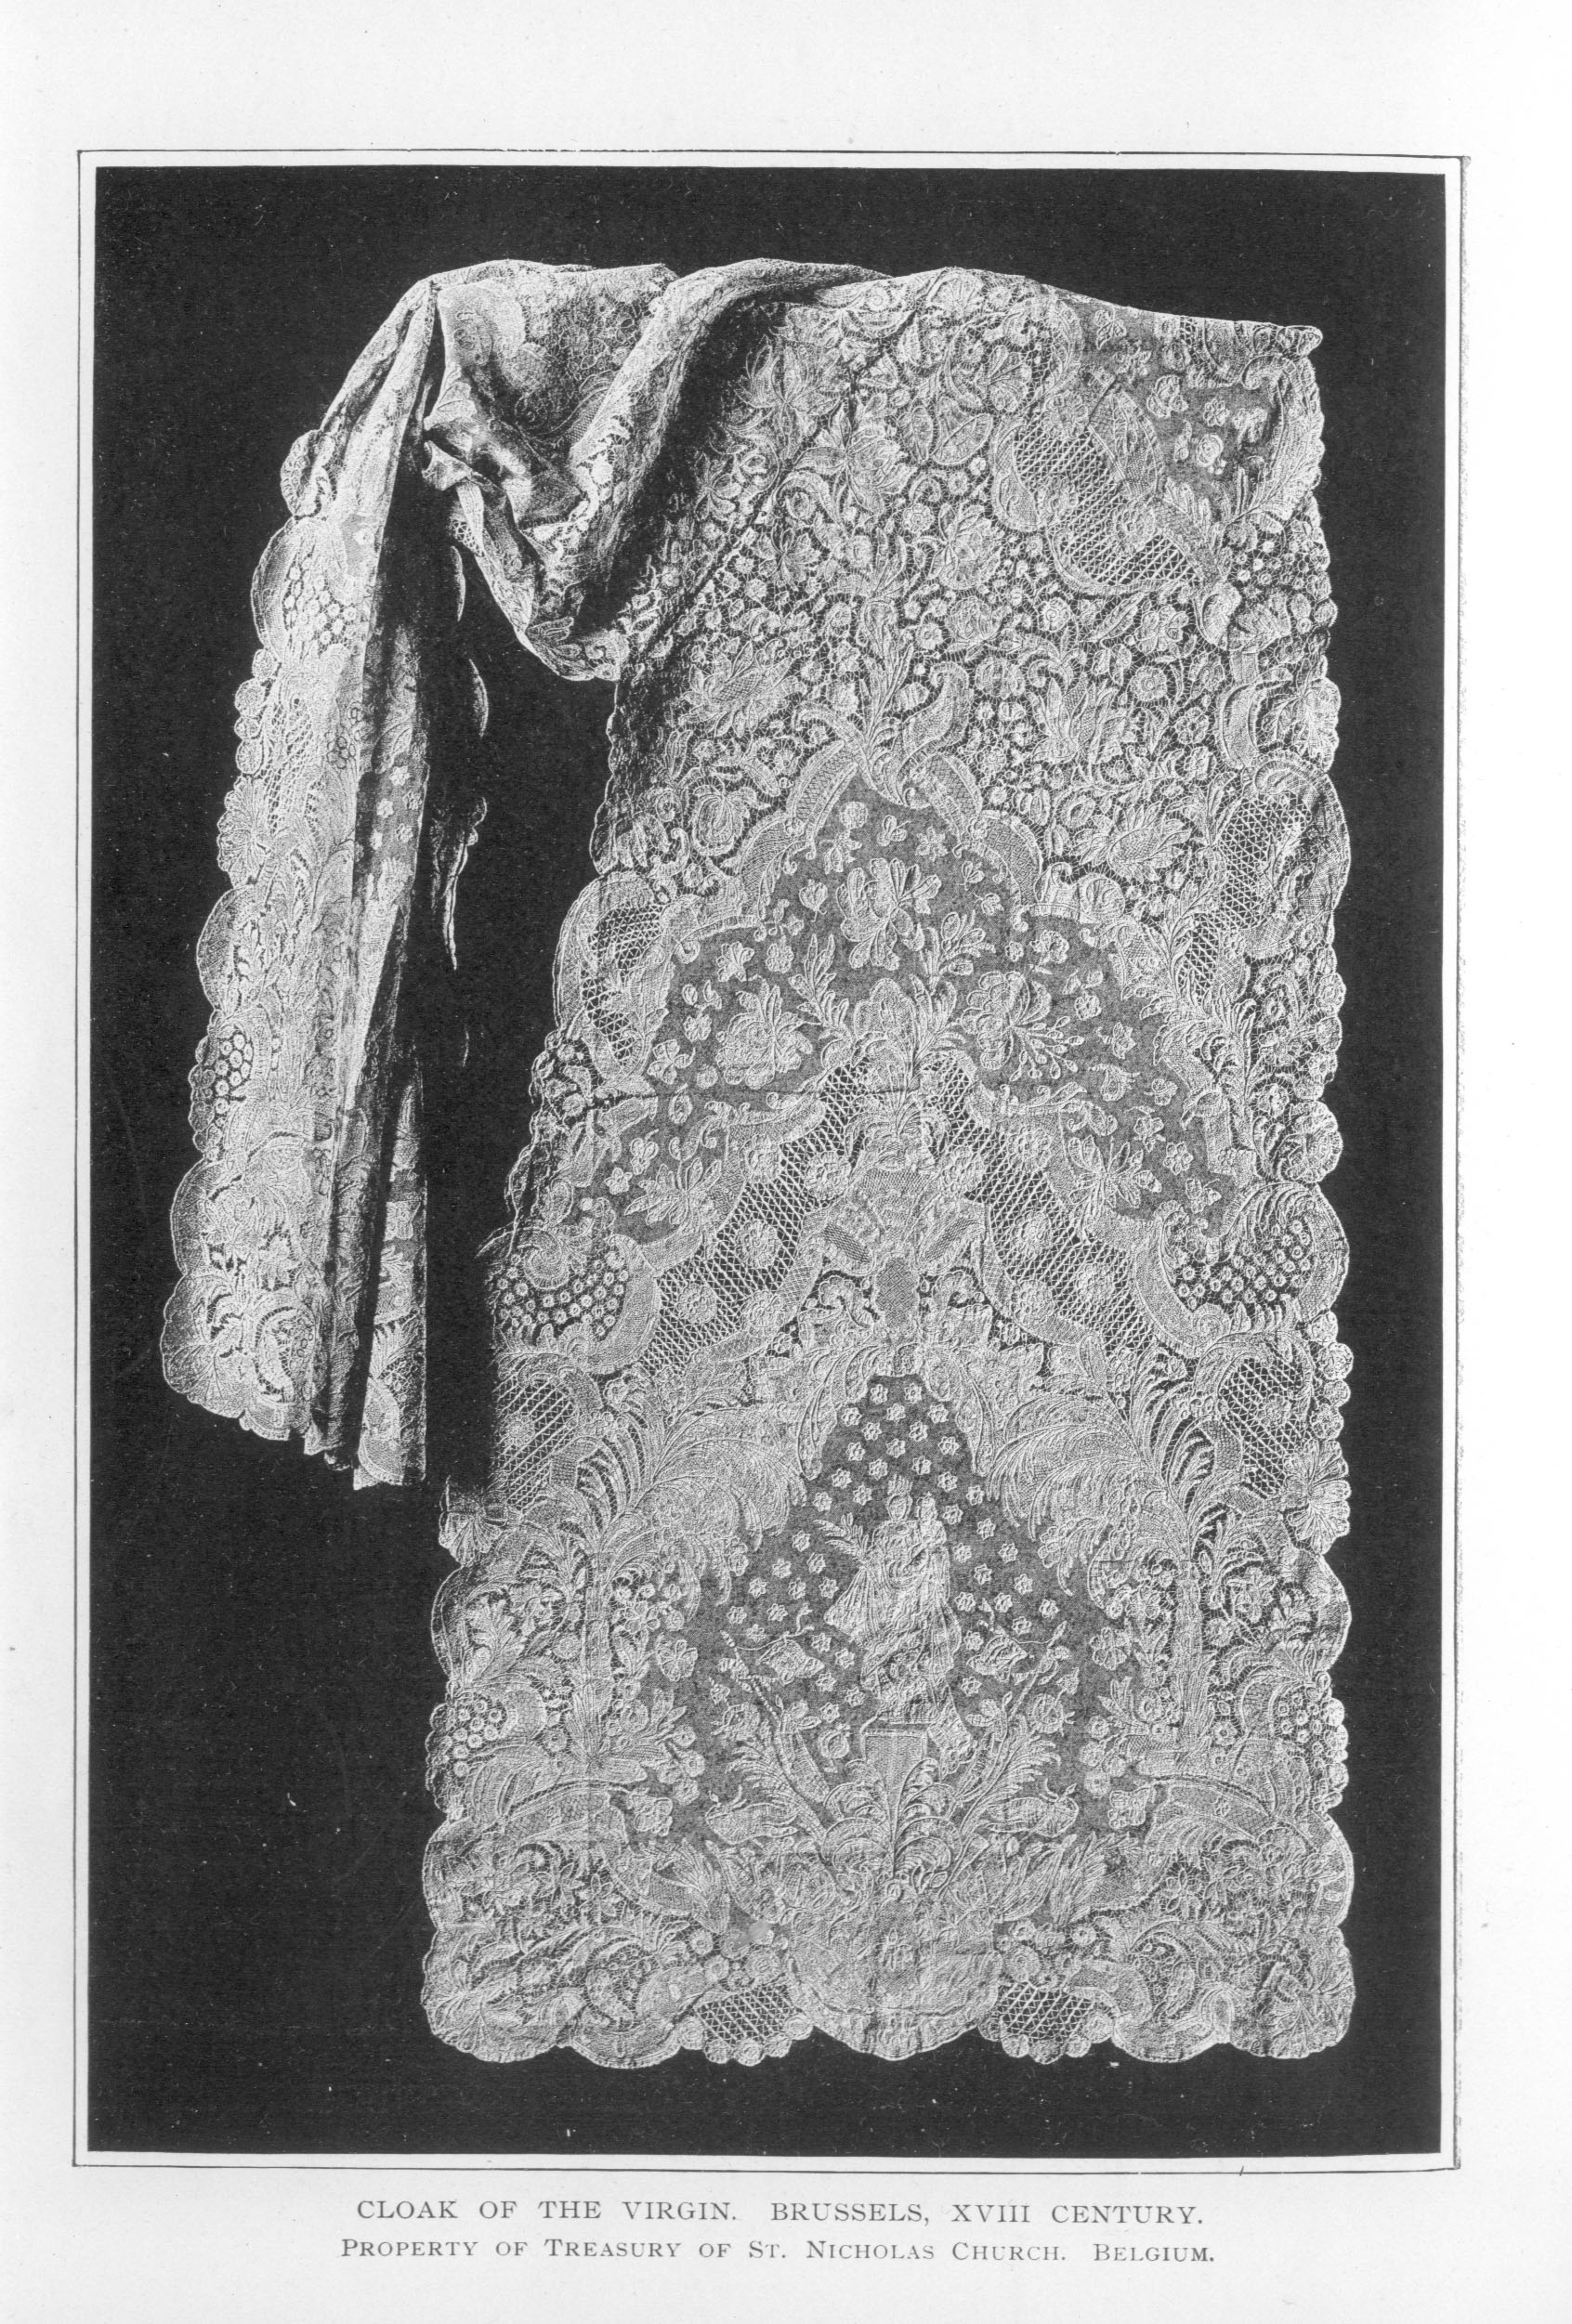 intricate lace cloak